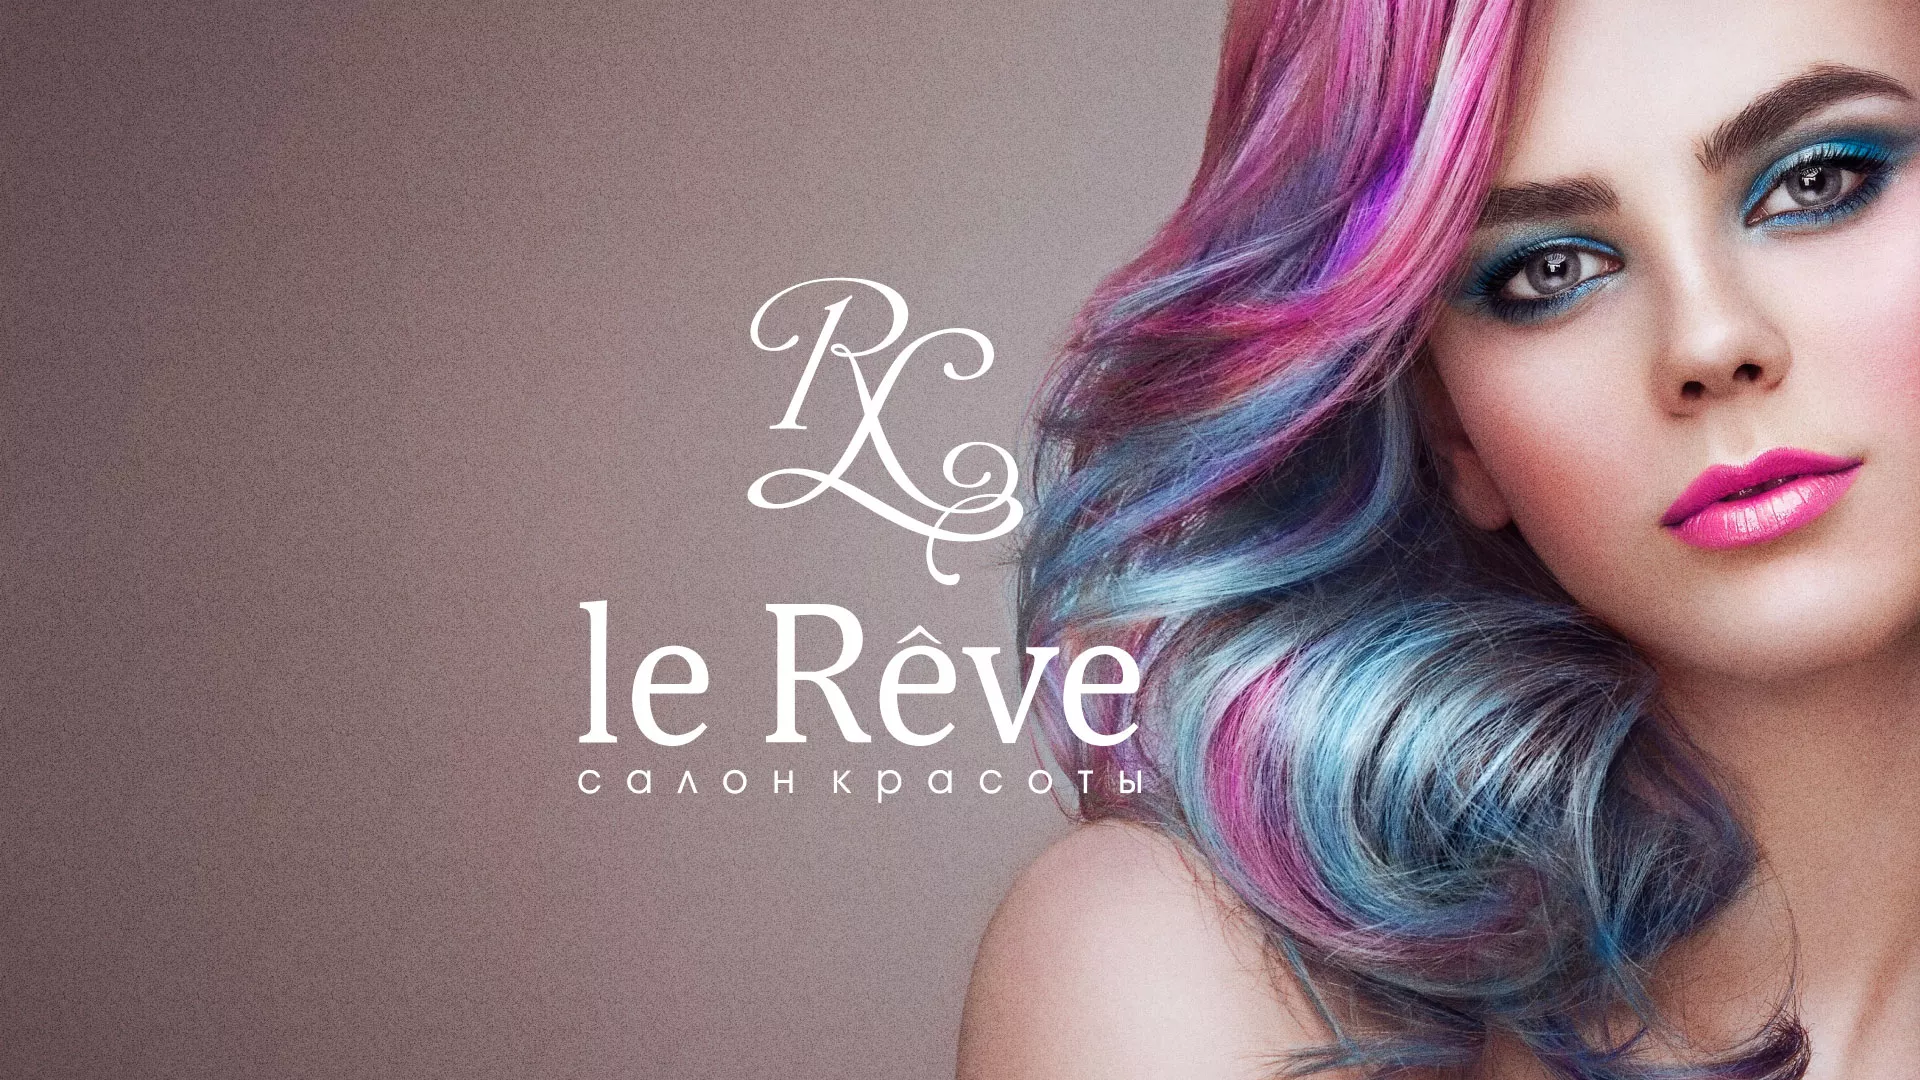 Создание сайта для салона красоты «Le Reve» в Юрьев-Польском